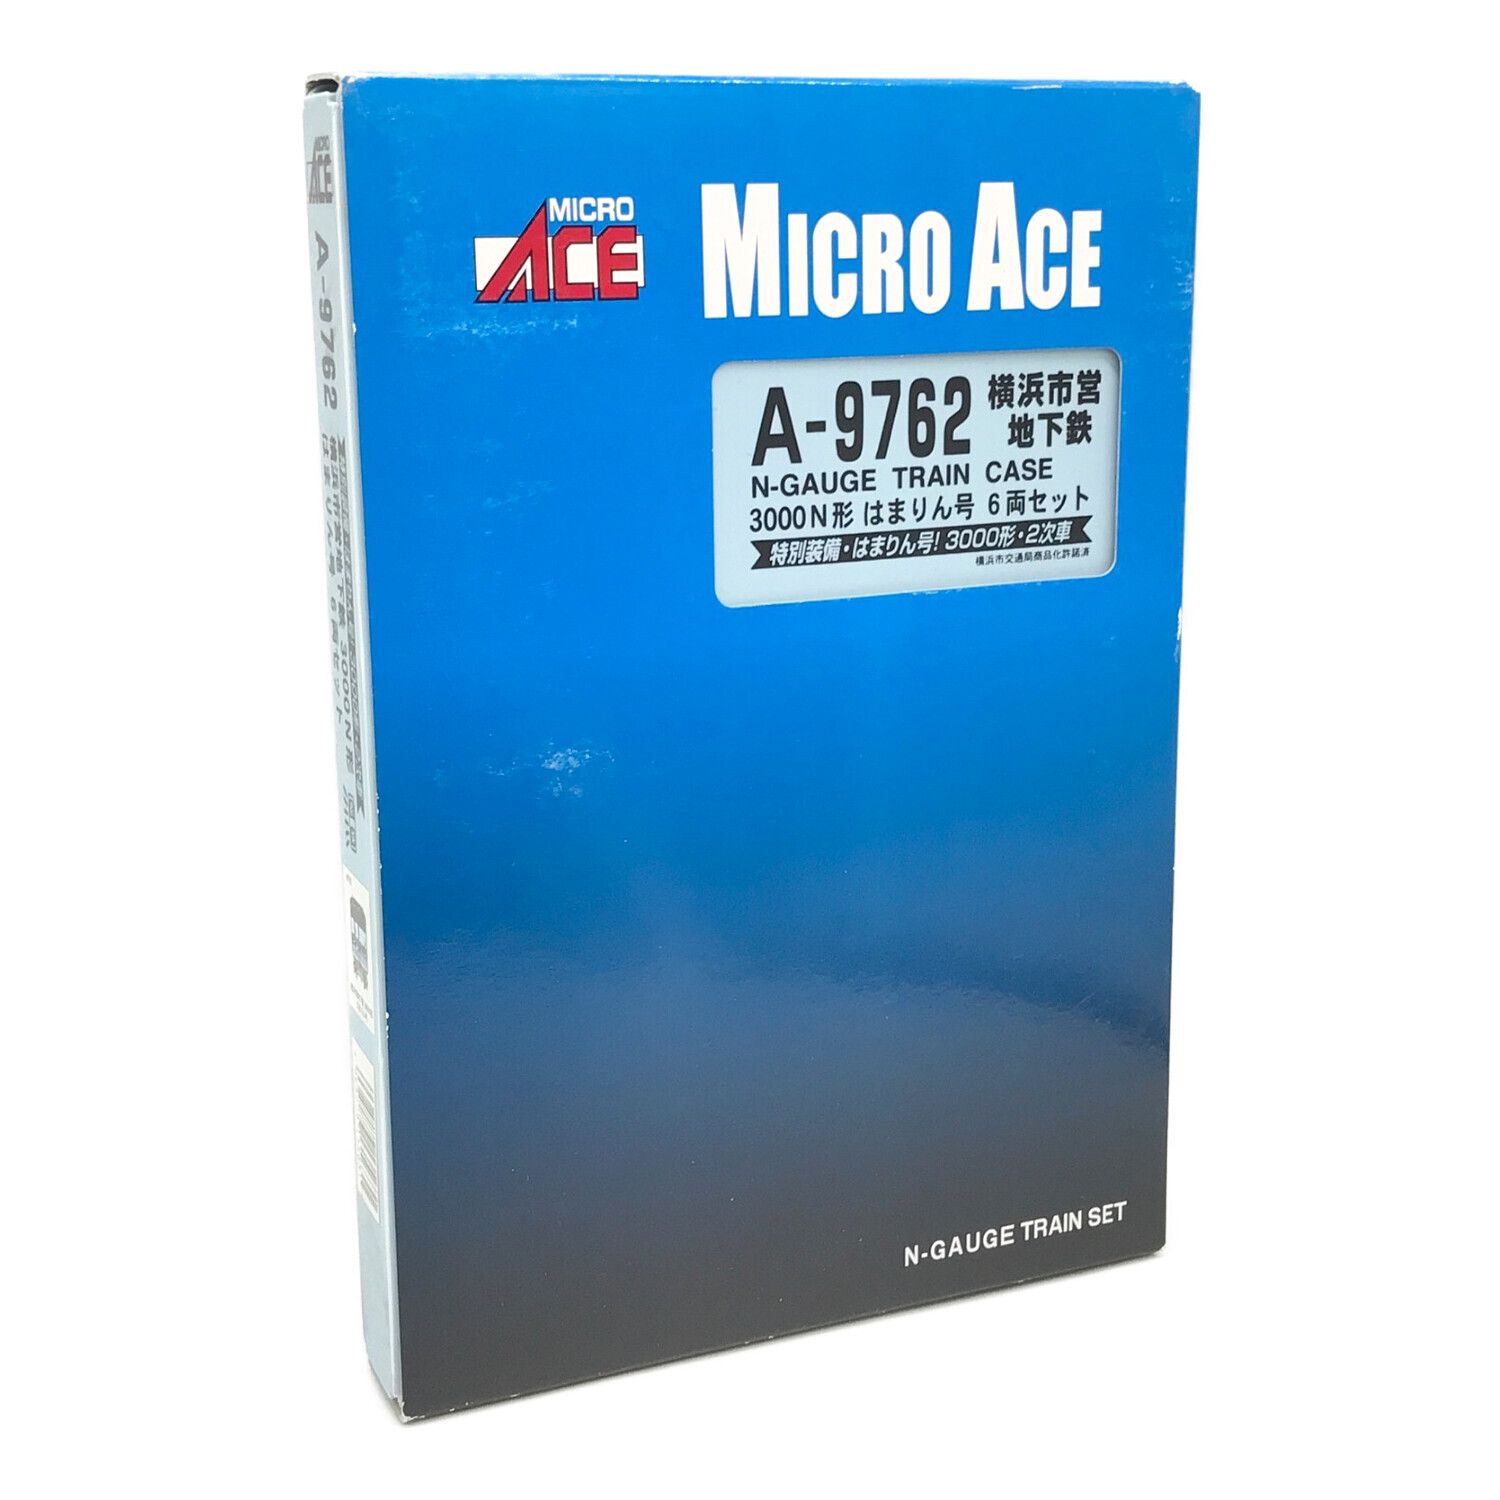 MICRO ACE (マイクロエース) Nゲージ 横浜市営地下鉄 3000N形 はまりん